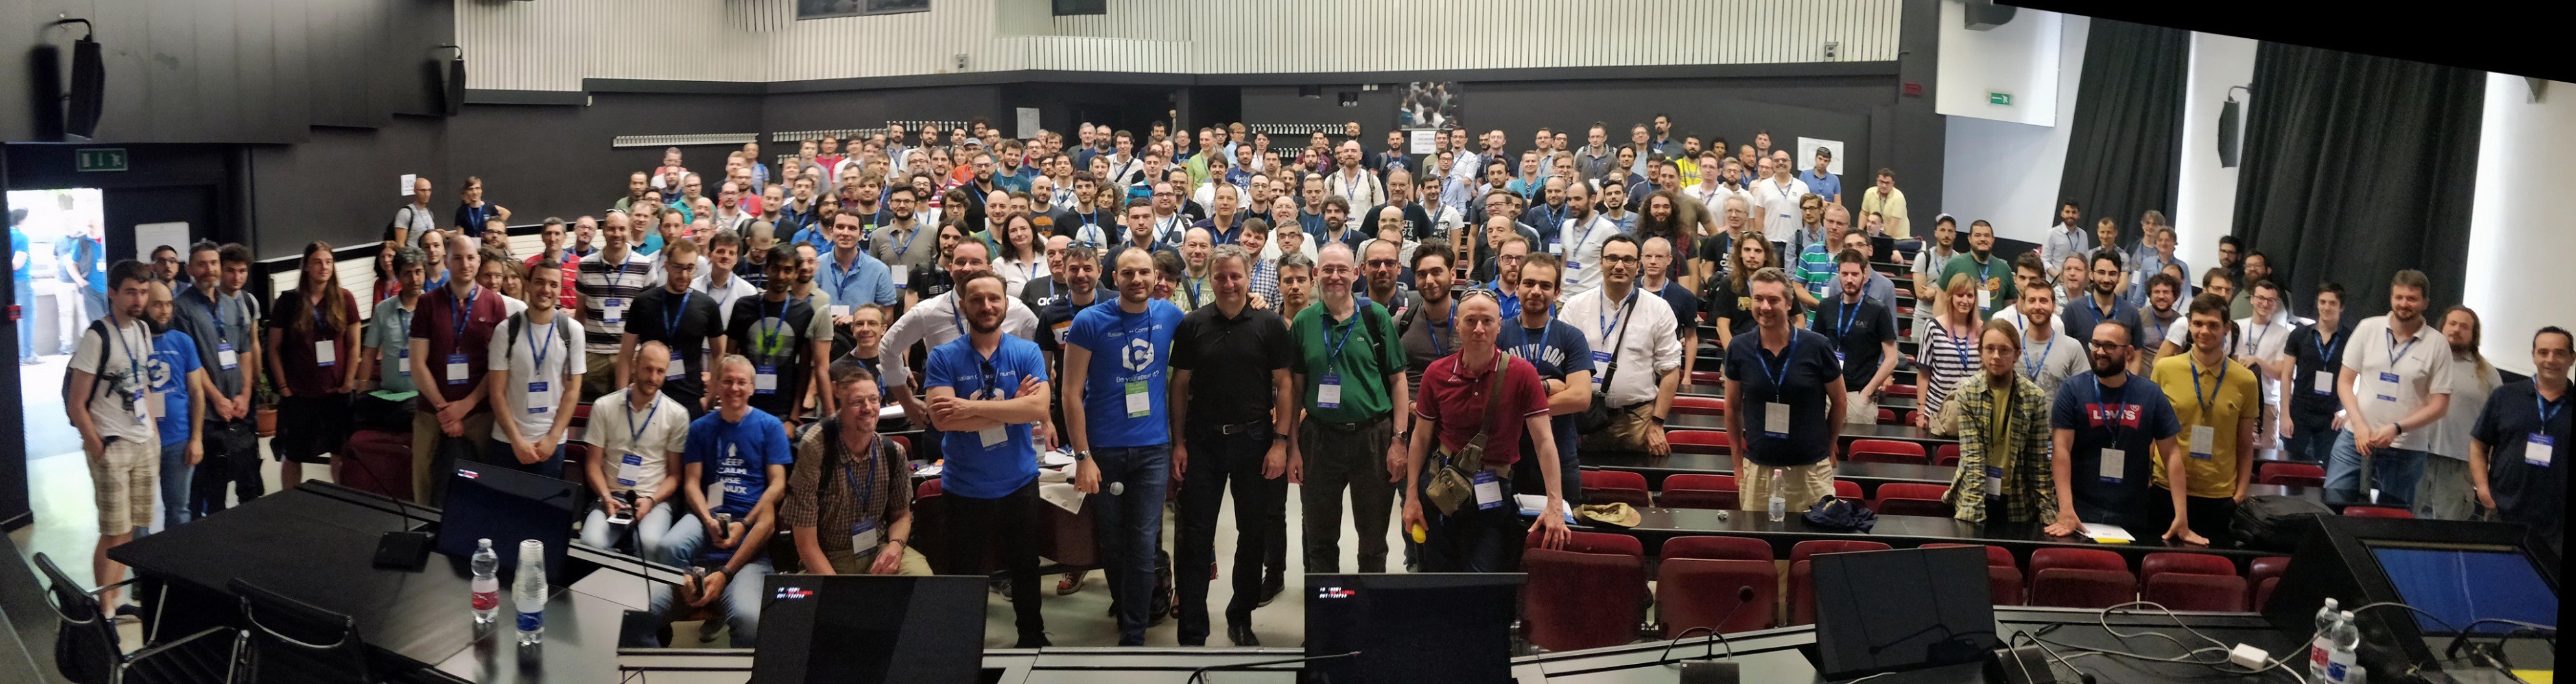 Italian C++ Conference 2019, Milano (240 partecipanti)